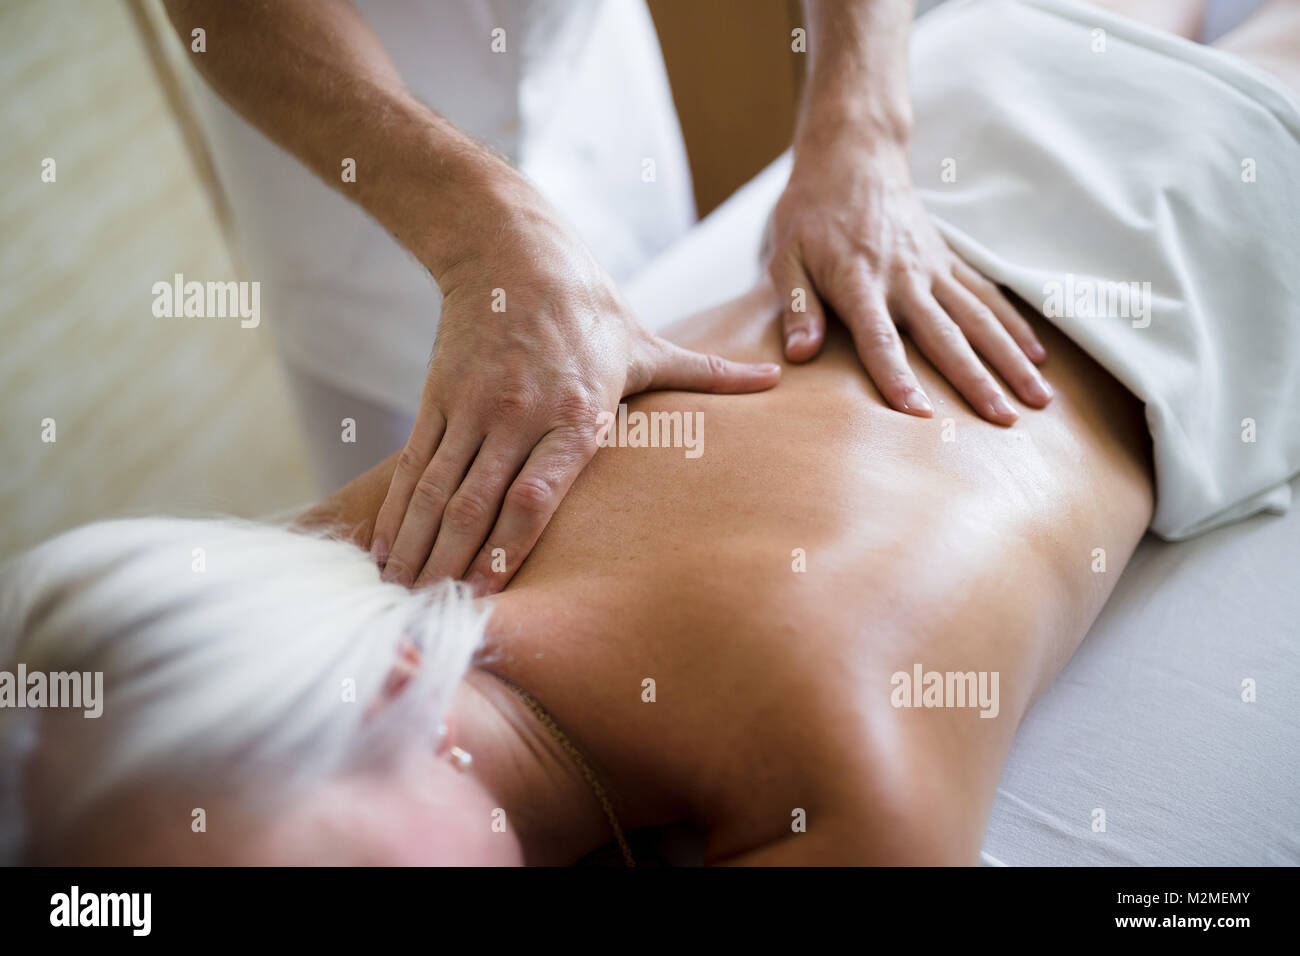 In der Nähe der weiblichen erhalten zurück Massage von männlichen professionellen Masseur. Körperpflege, Hautpflege, Wellness, Wohlbefinden, Gesundheit, Schönheit Behandlungskonzept. Stockfoto